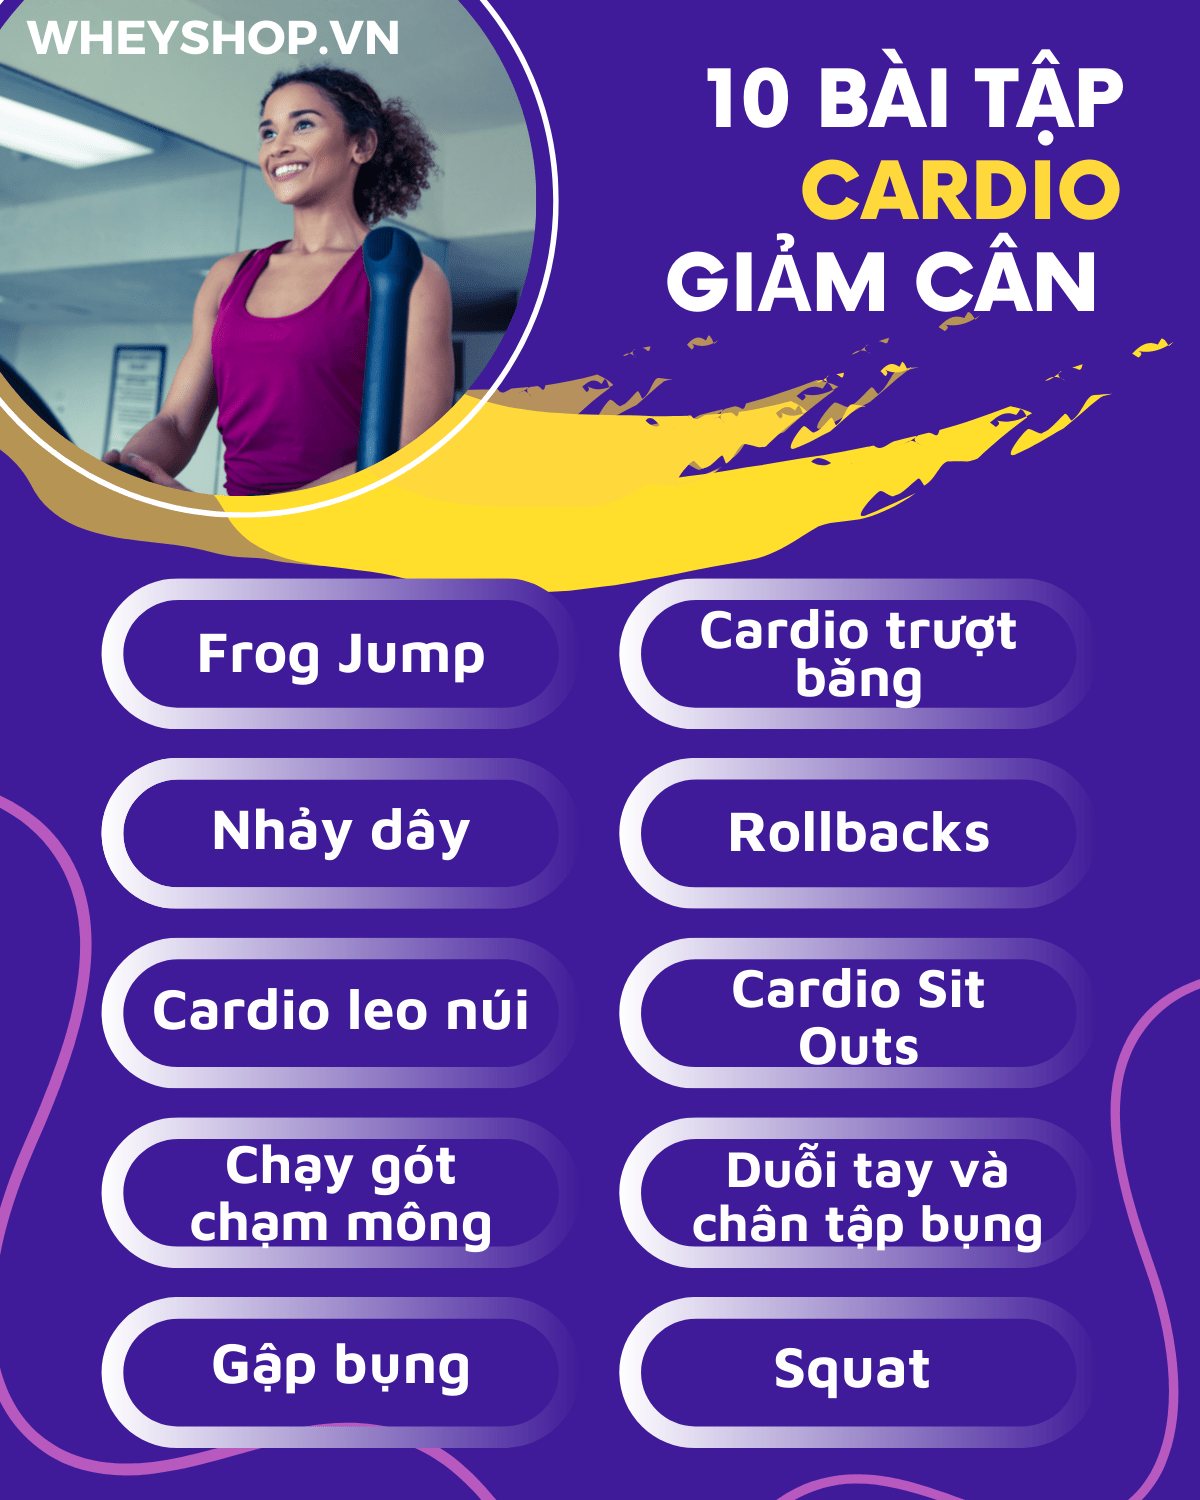  Bài tập cardio, có thể coi là các bài tập " định cao' trong cho hiệu quả giảm cân nhanh chóng, ngoài ra còn rất tốt cho sức khỏe bộ phận tim mạch cơ thể.